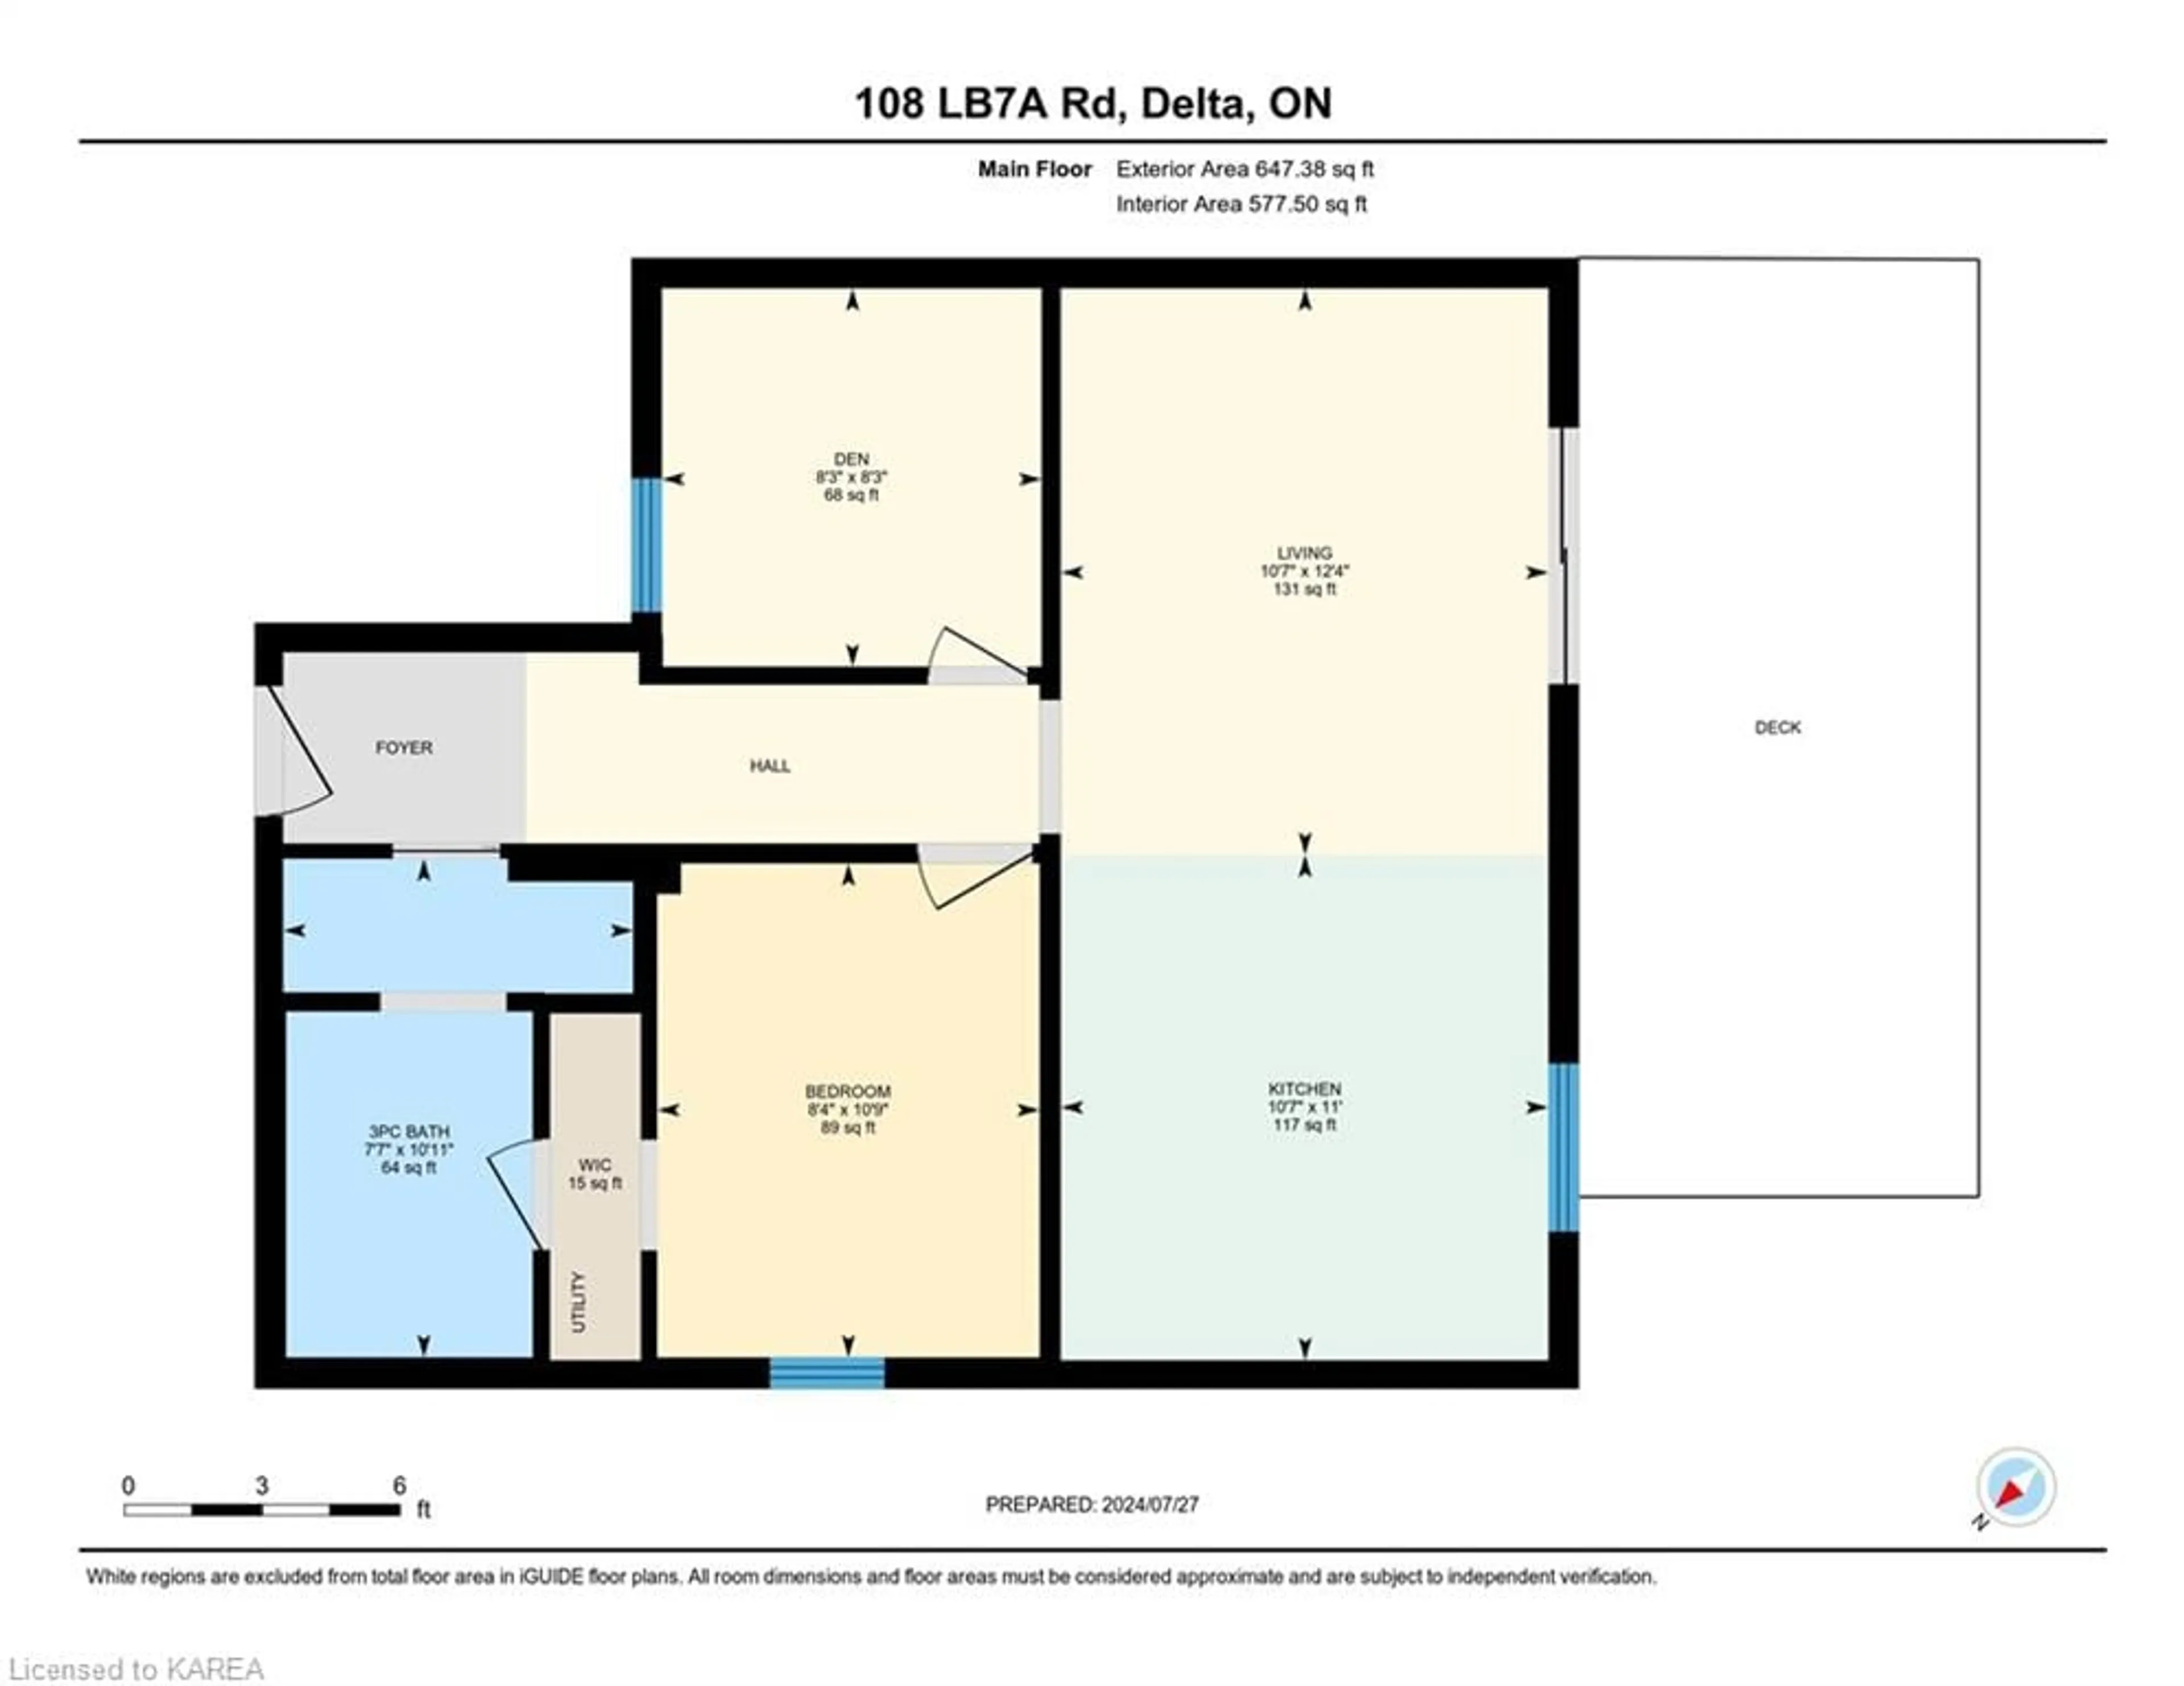 Floor plan for 108 Lb7a Rd, Delta Ontario K0E 1L0